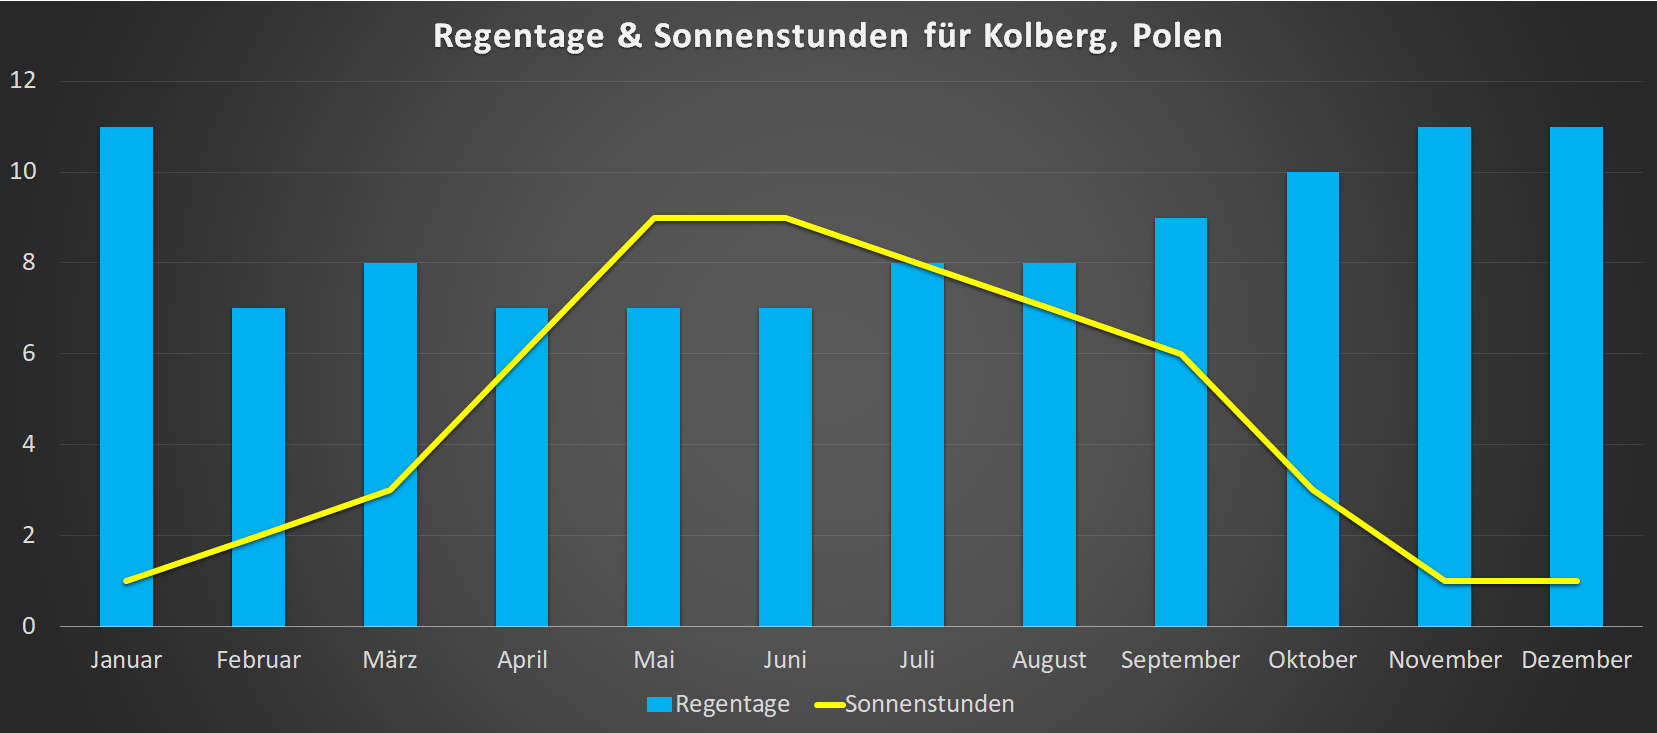 Regentage & Sonnenstunden für Kolberg im Jahresverlauf